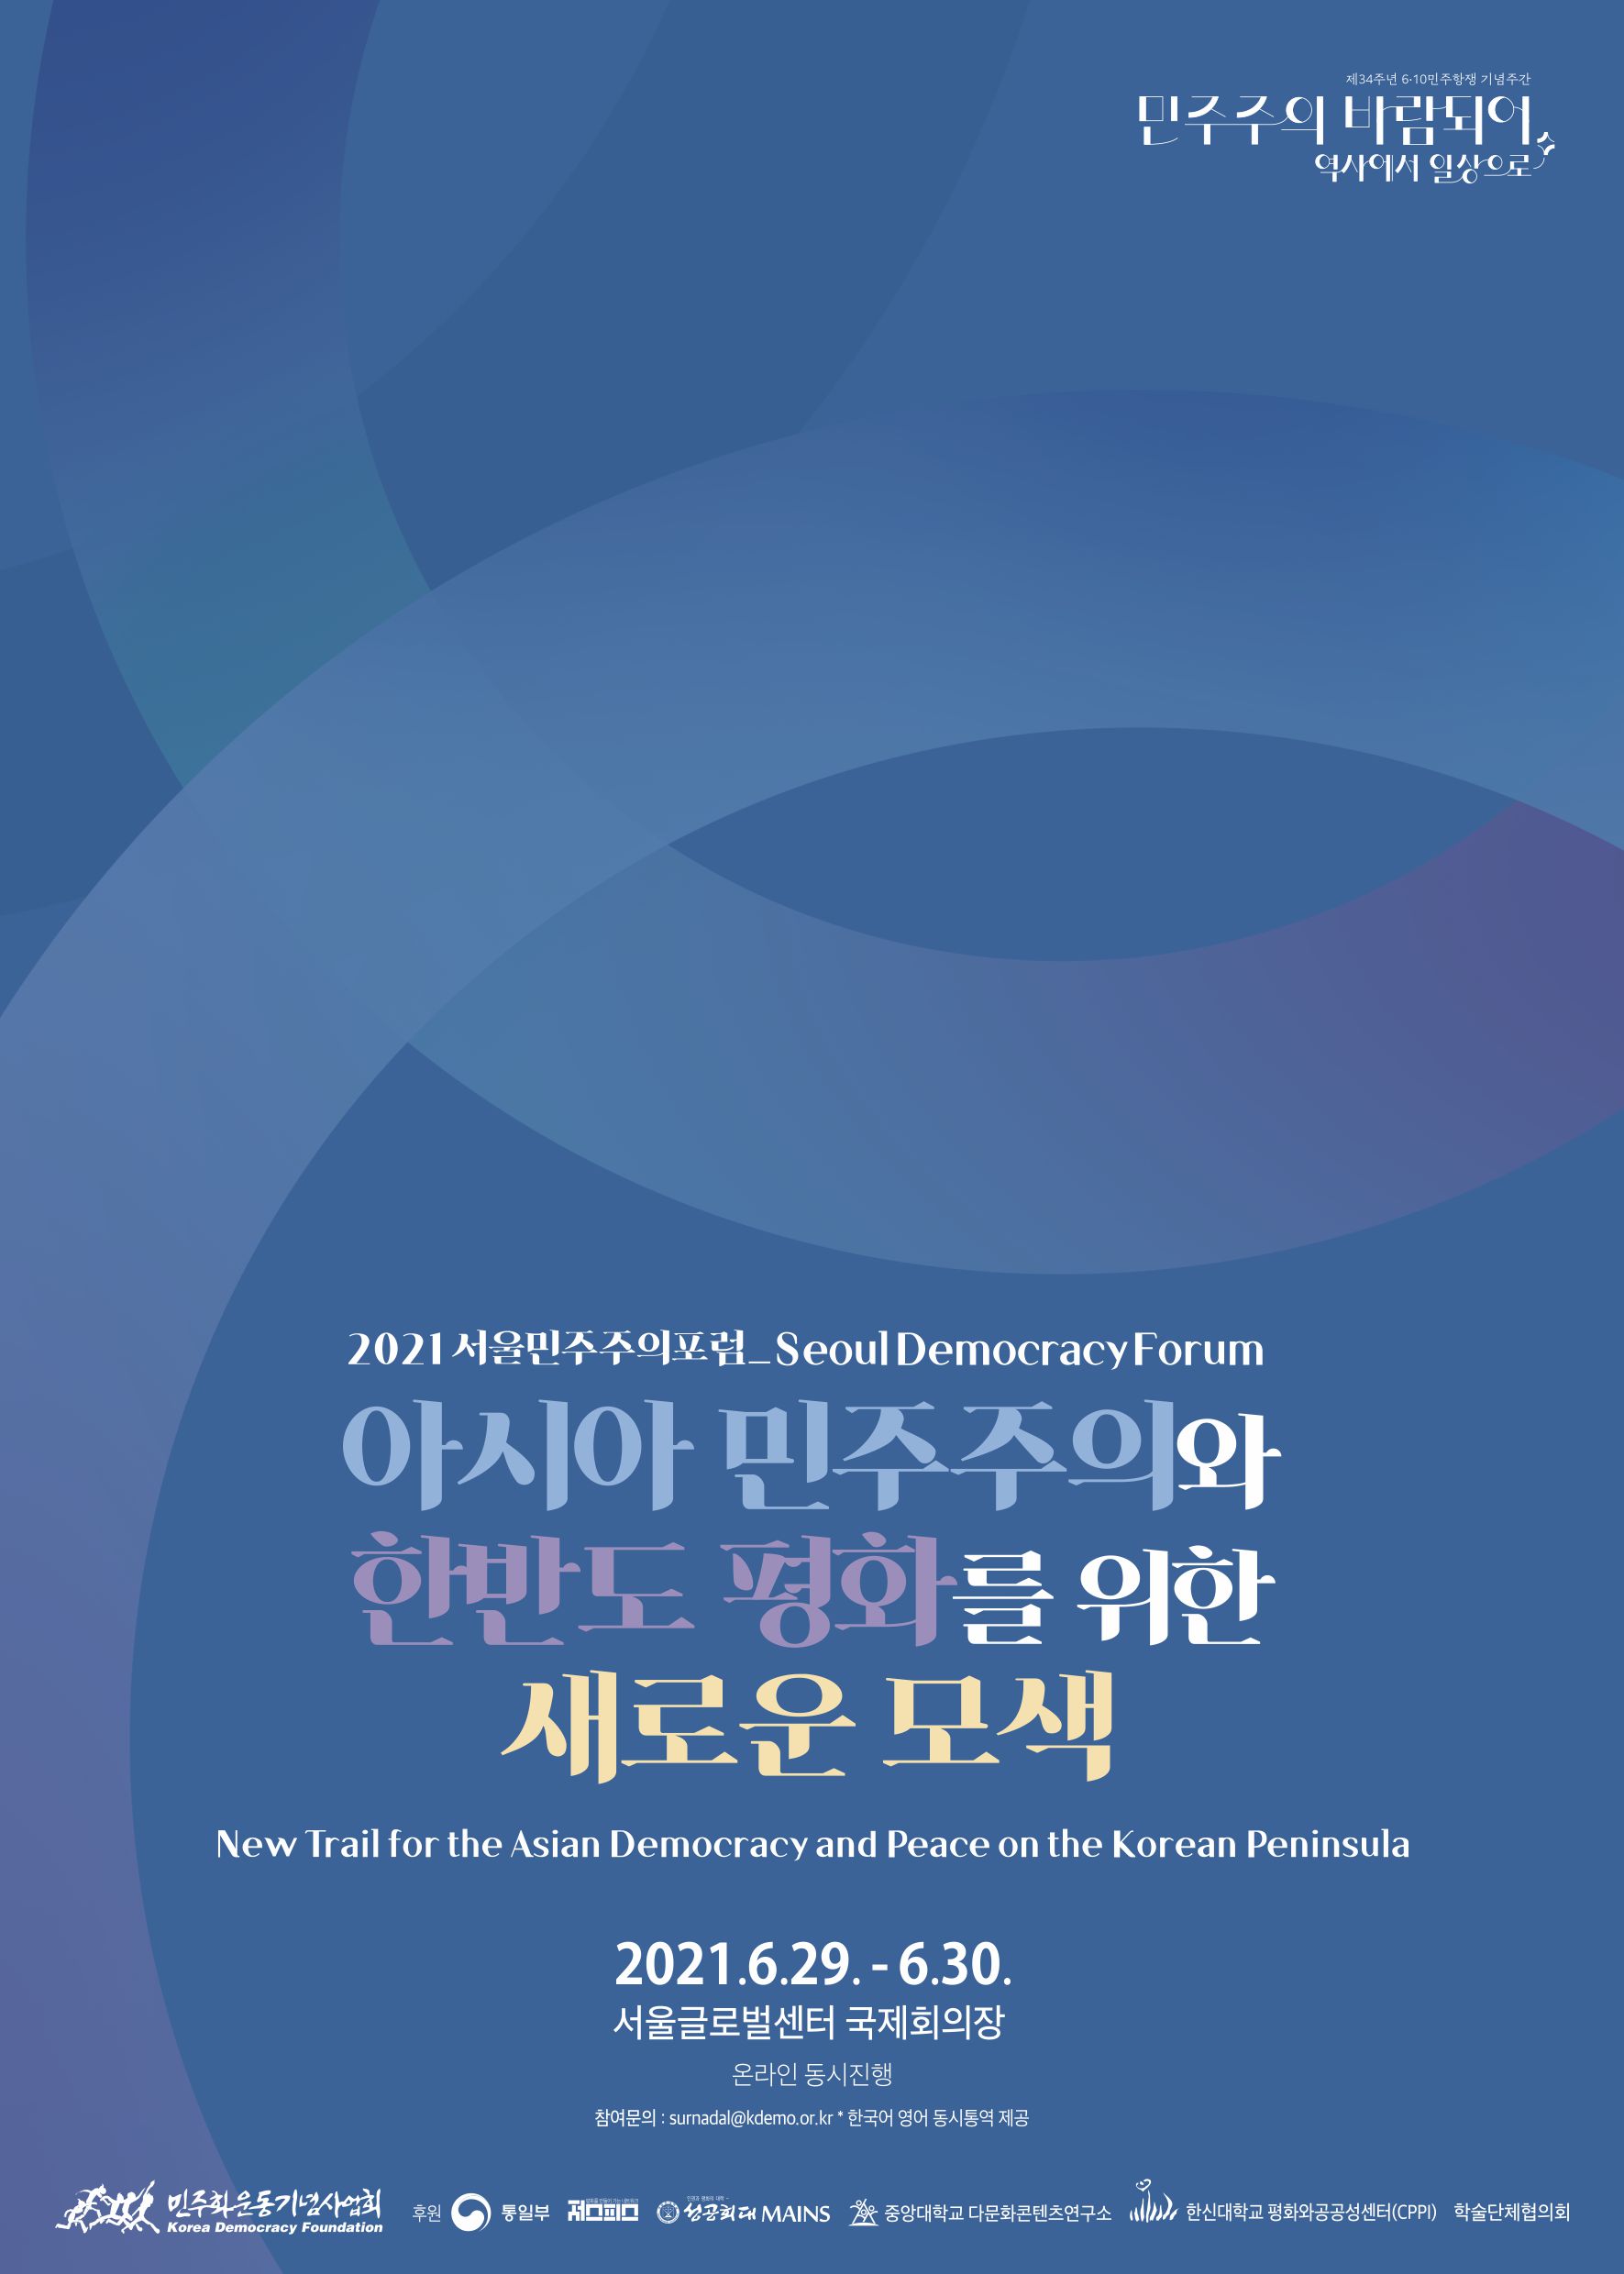 2021 서울민주주의포럼 Seoul Democracy Forum 아시아 민주주의와 한반도 평화를 위한 새로운 모색 New Trail for the Asian Democracy and Peace on the Korean Peninsula / 2021.6.29.-6.30.서울글로벌센터 국제회의장(온라인 동시 진행) / 민주화운동기념사업회 / 후원:일부, 저스피스, 성공회대MAINS, 중앙대다문화콘텐츠연구소, 한신대평화와공공성센터, 학술단체협의회, Global Voices